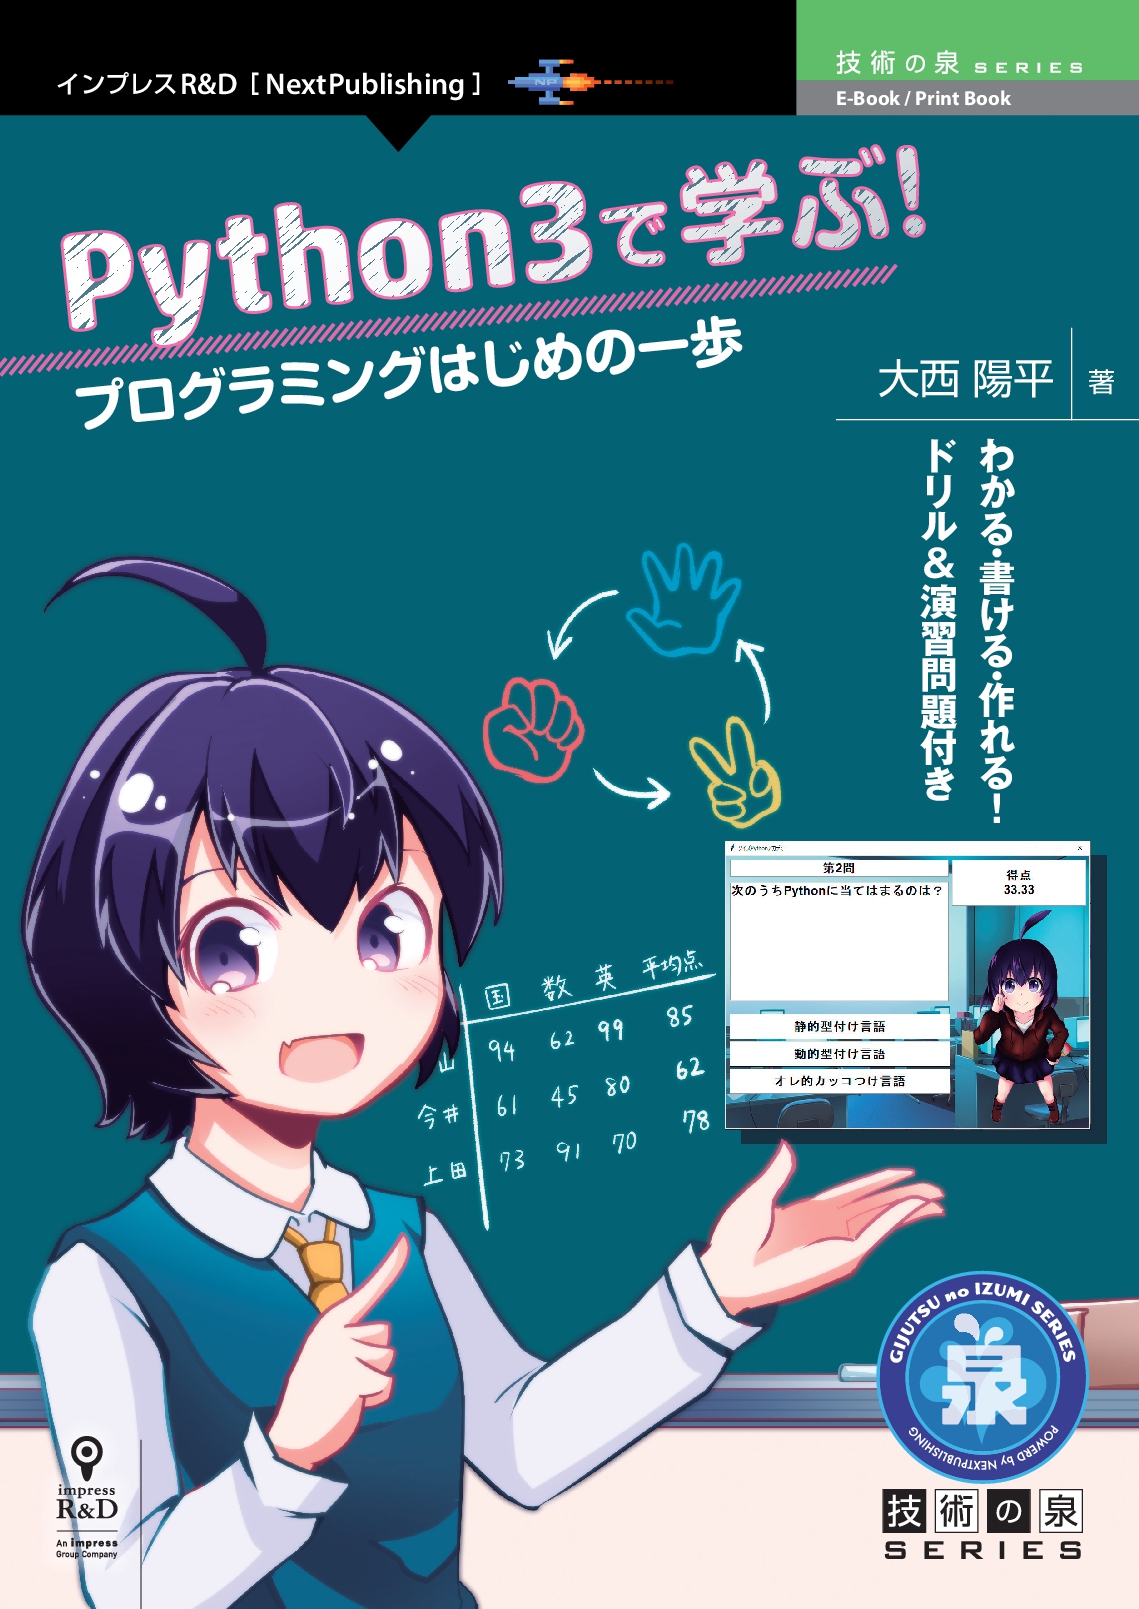 Python3で学ぶ！プログラミングはじめの一歩 | 電子書籍とプリントオン 